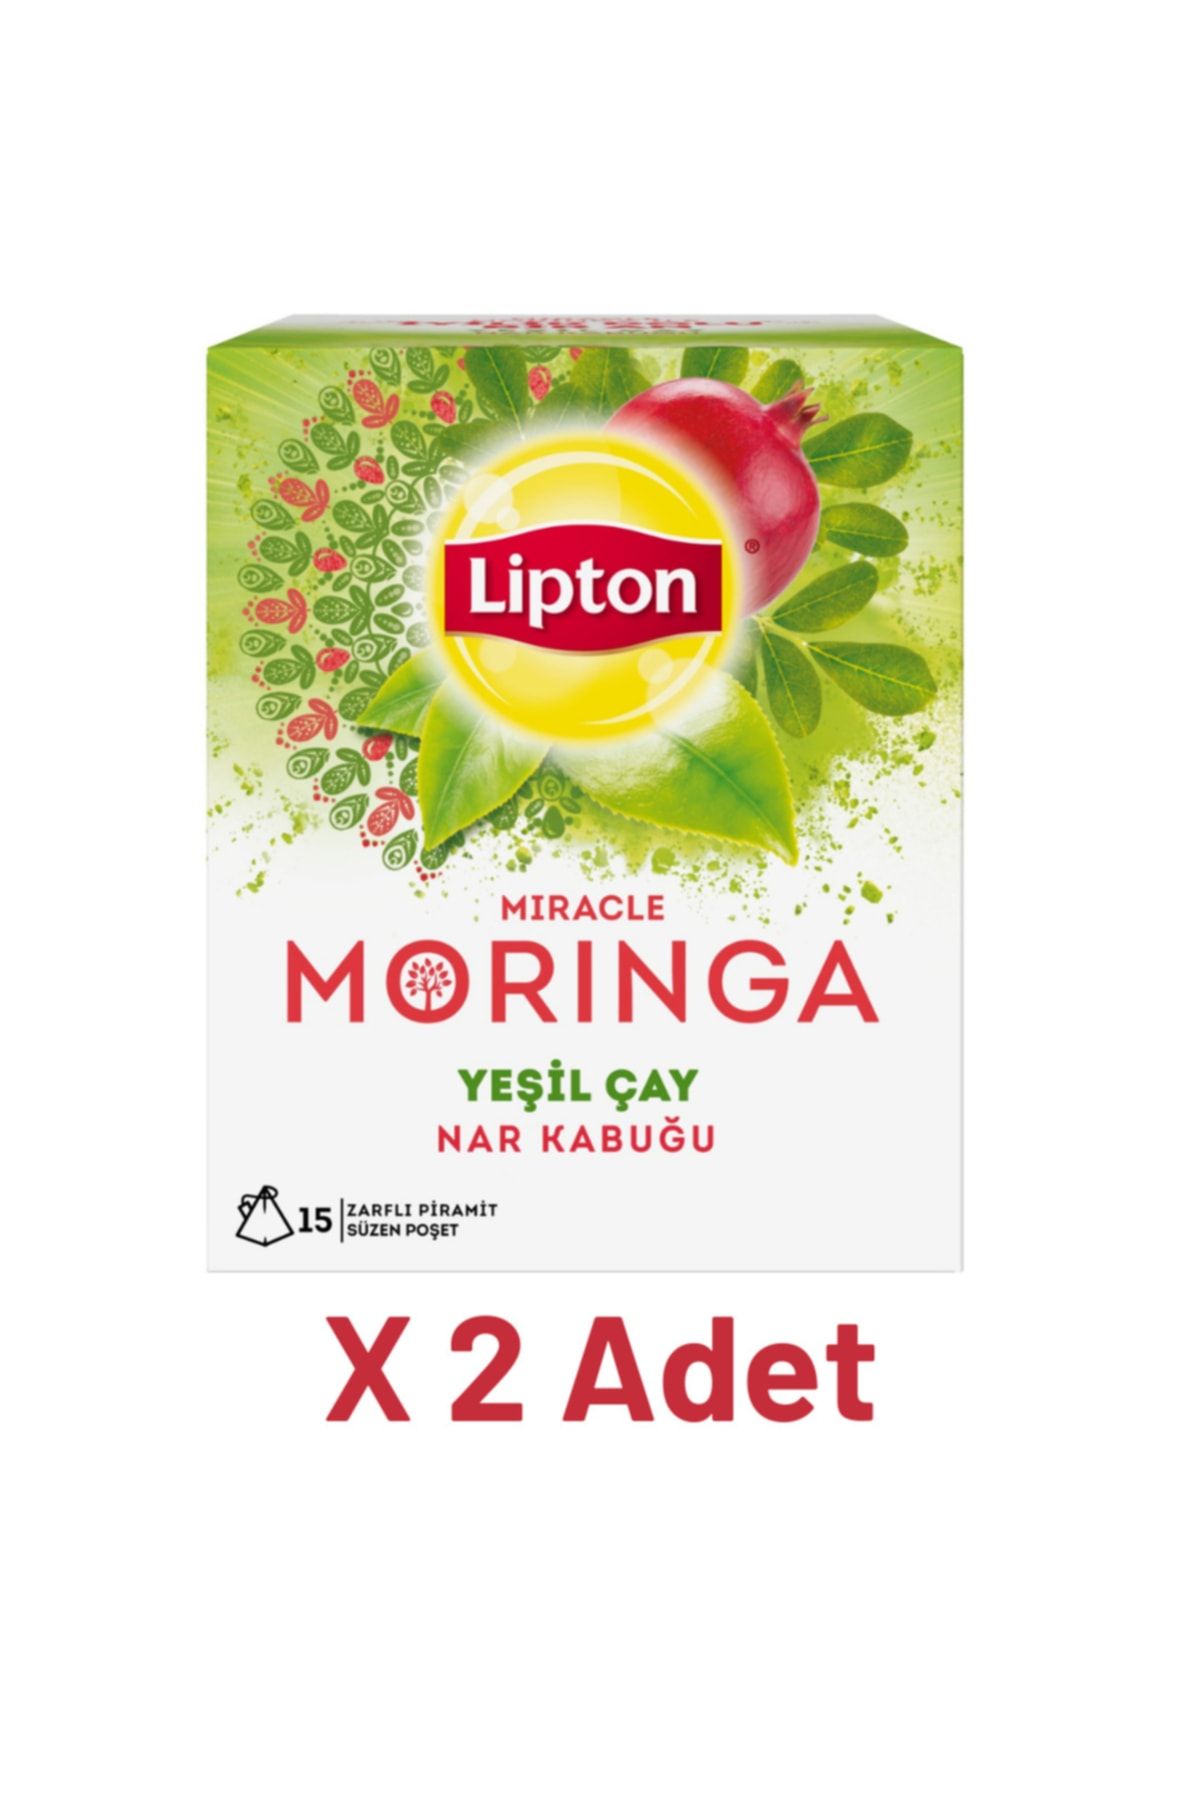 Lipton Moringa Bardak Poşet Bitki Ve Meyve Çayı 15li X 2 Adet